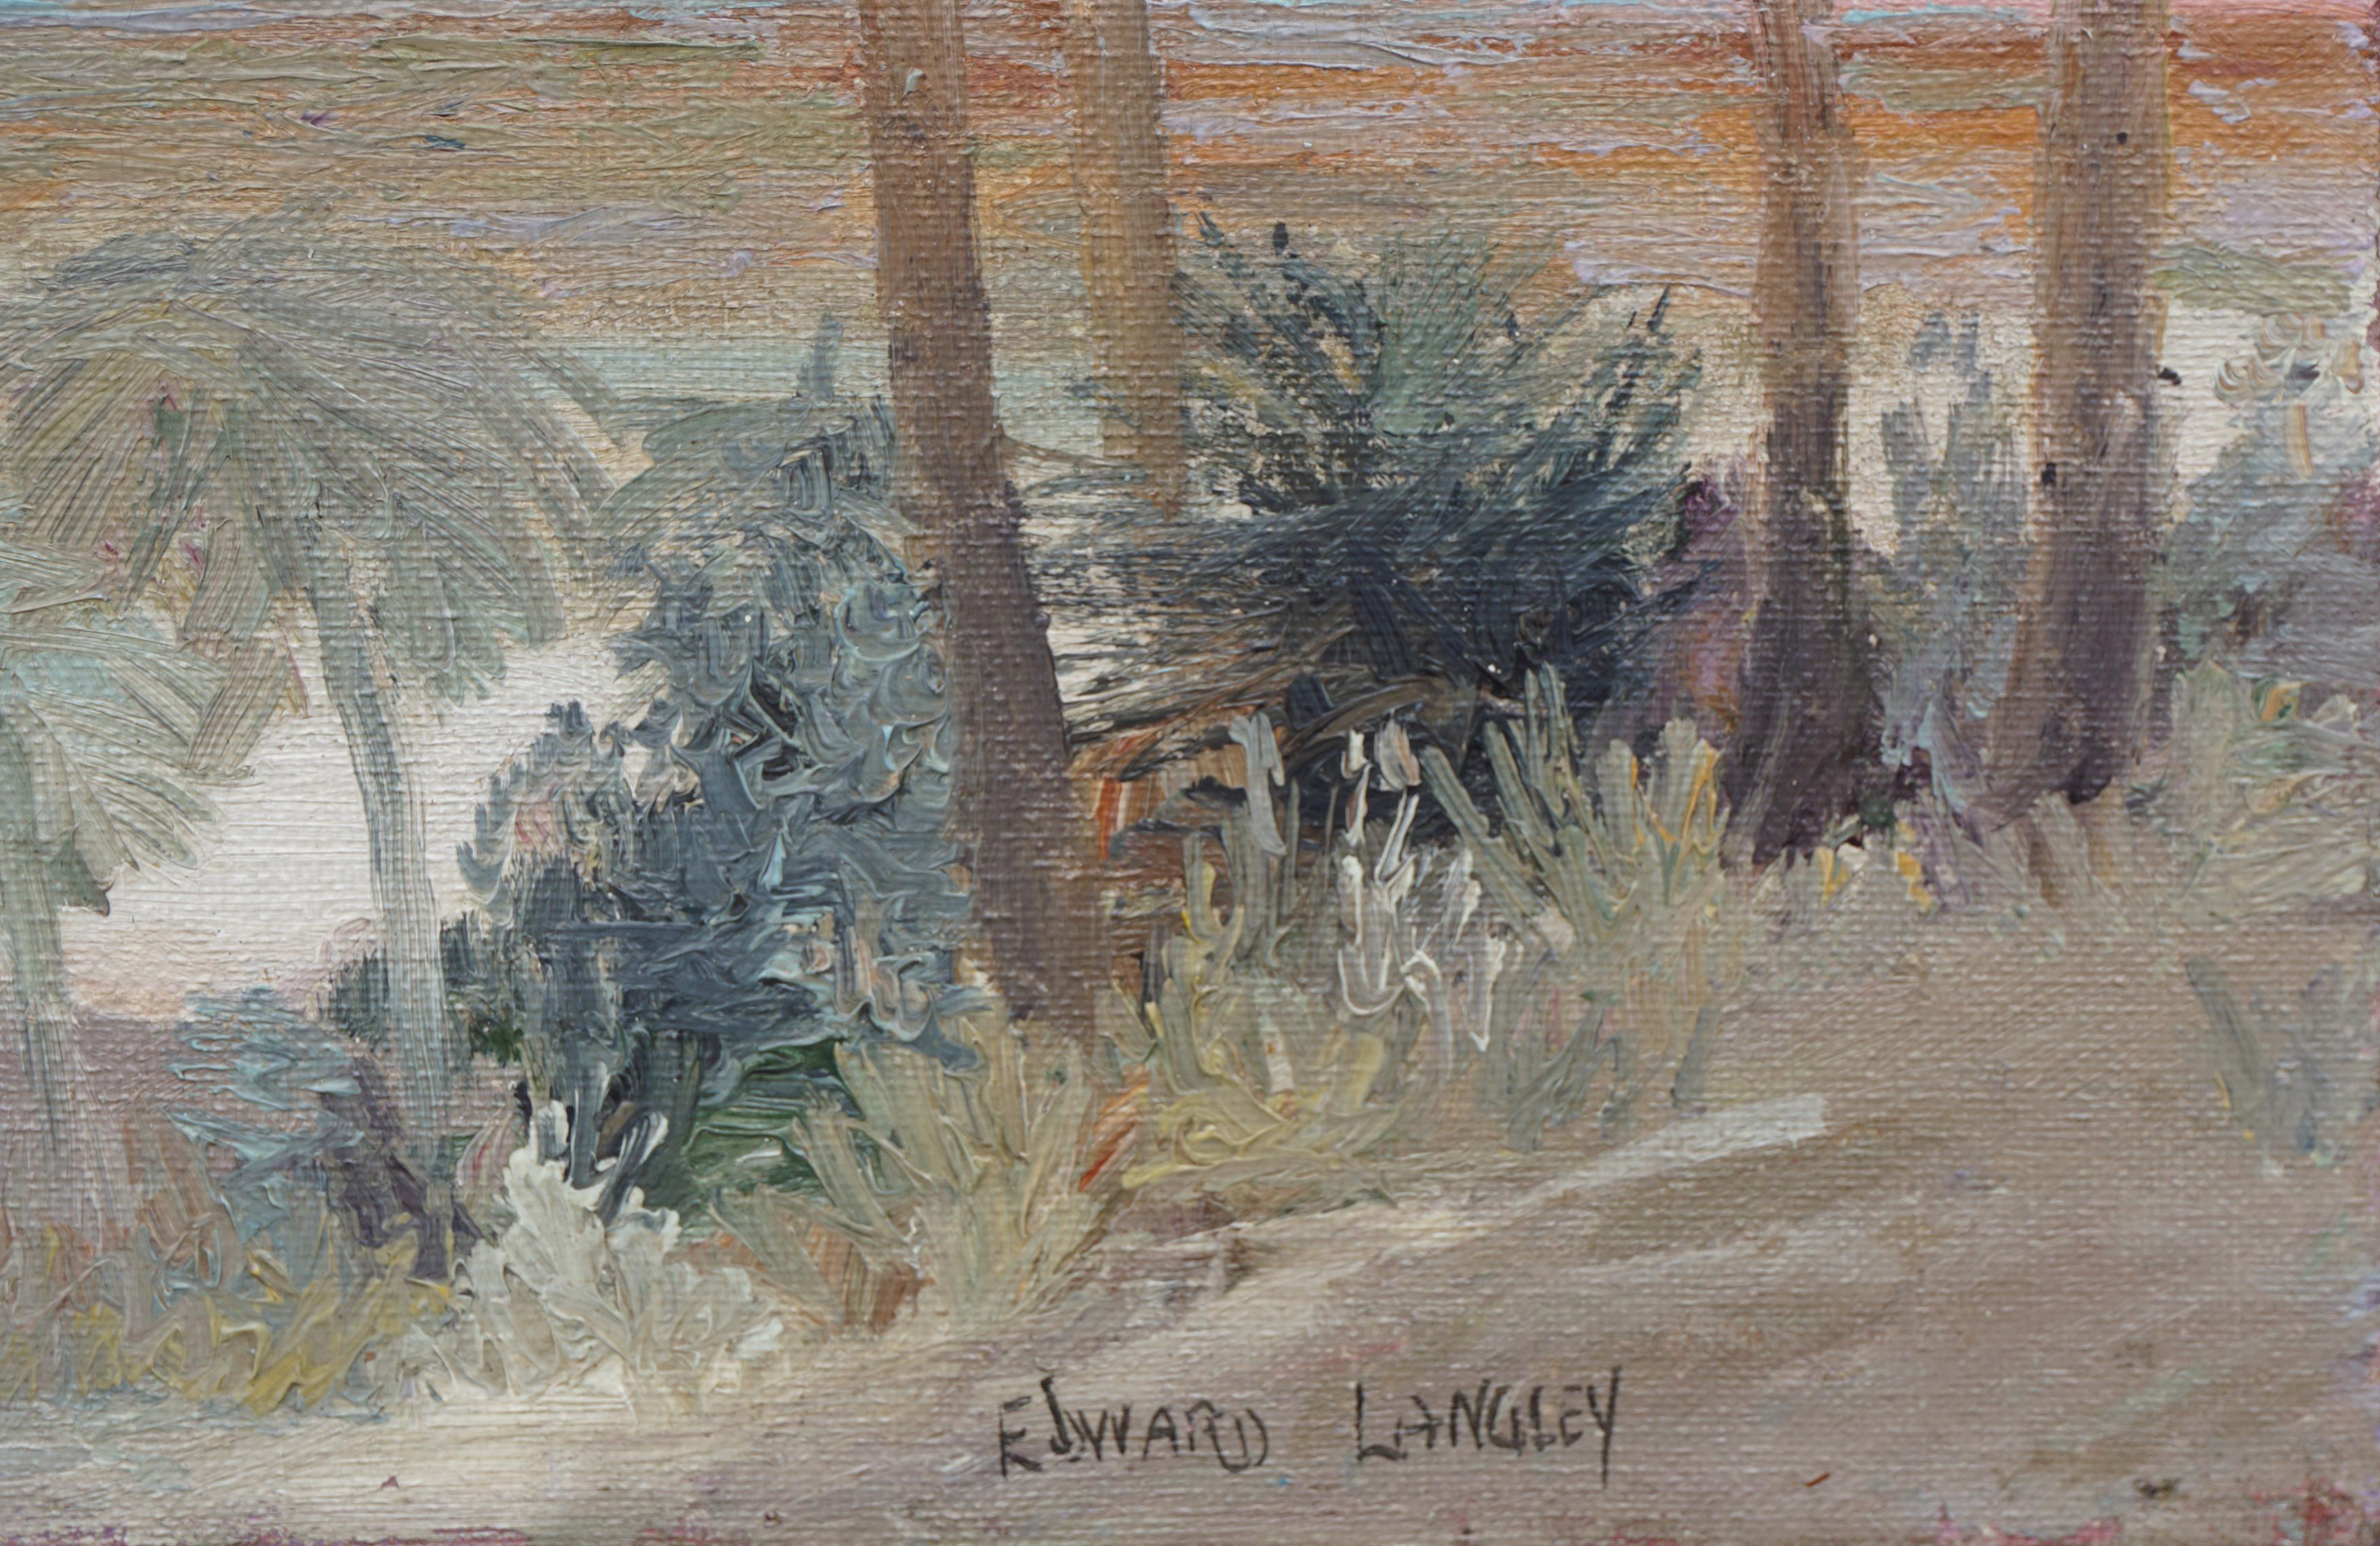 Paysage de Palm Springs du début du XXe siècle - Impressionnisme américain Painting par Edward Marion Langley